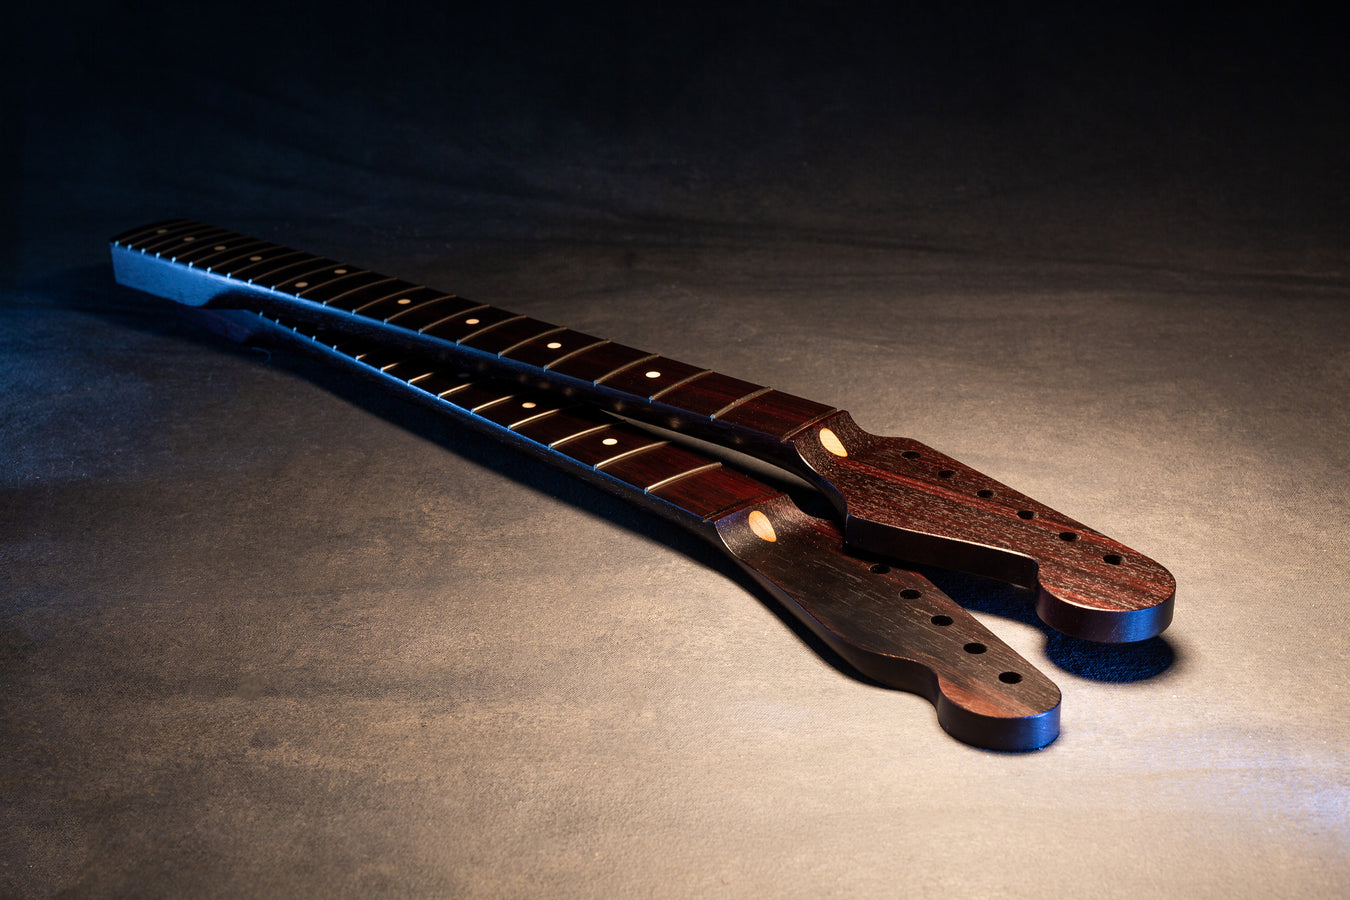 2 rosewood, dark colored guitar necks